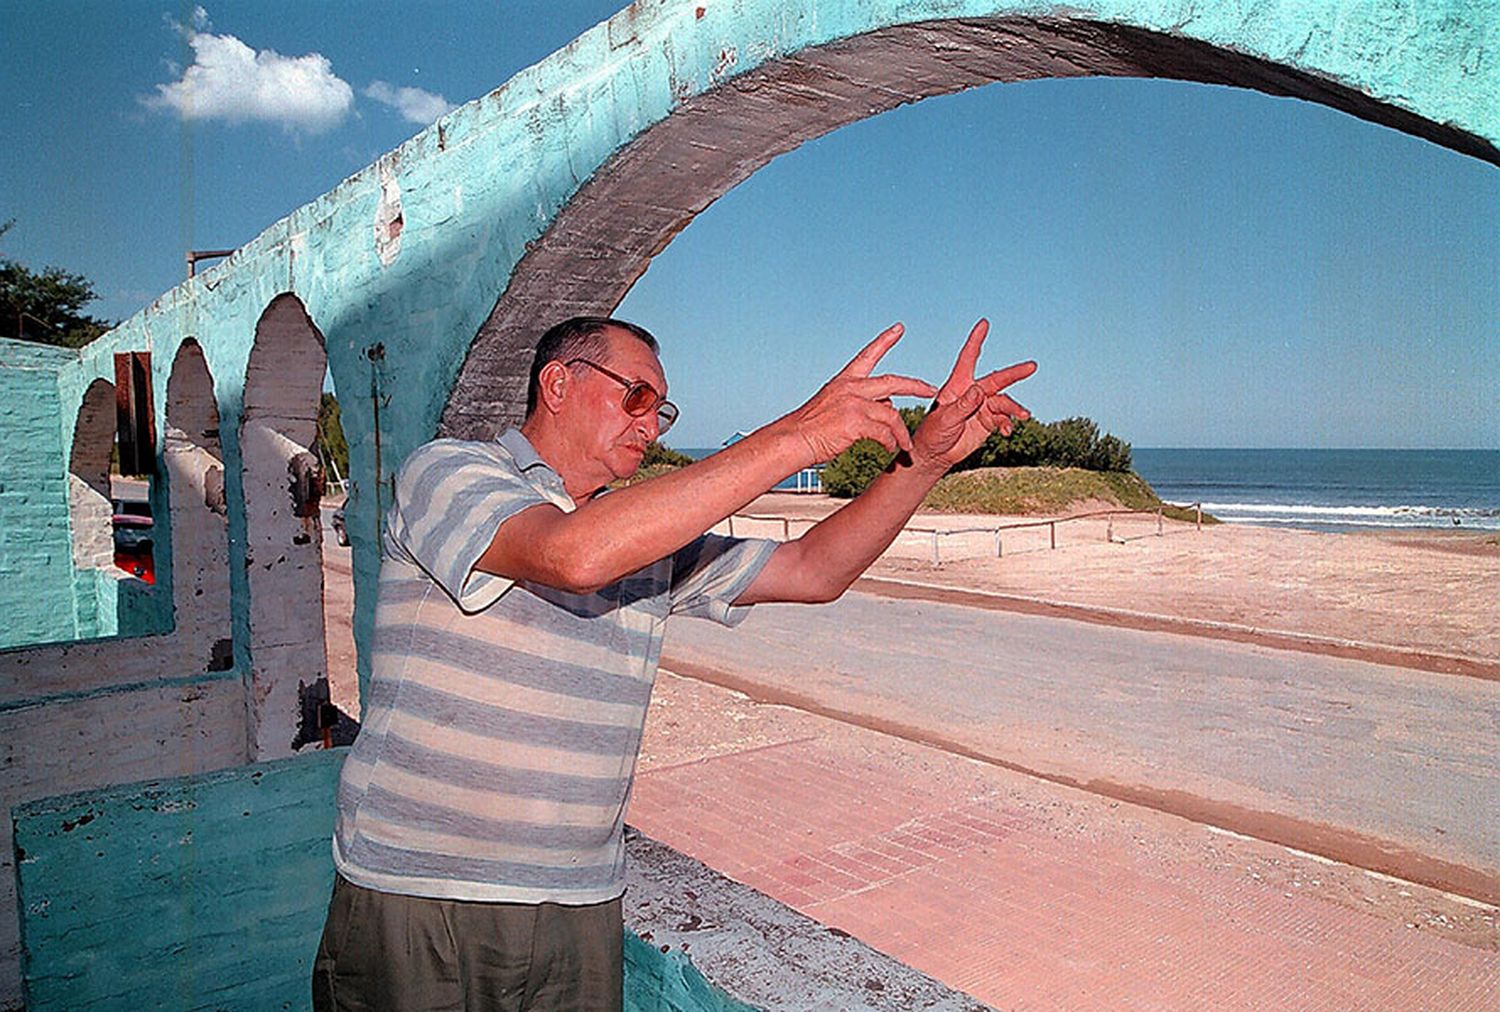 En marzo de 2000, un hombre que vivía en el complejo Pinocho dijo haber visto ovnis frente a la costa